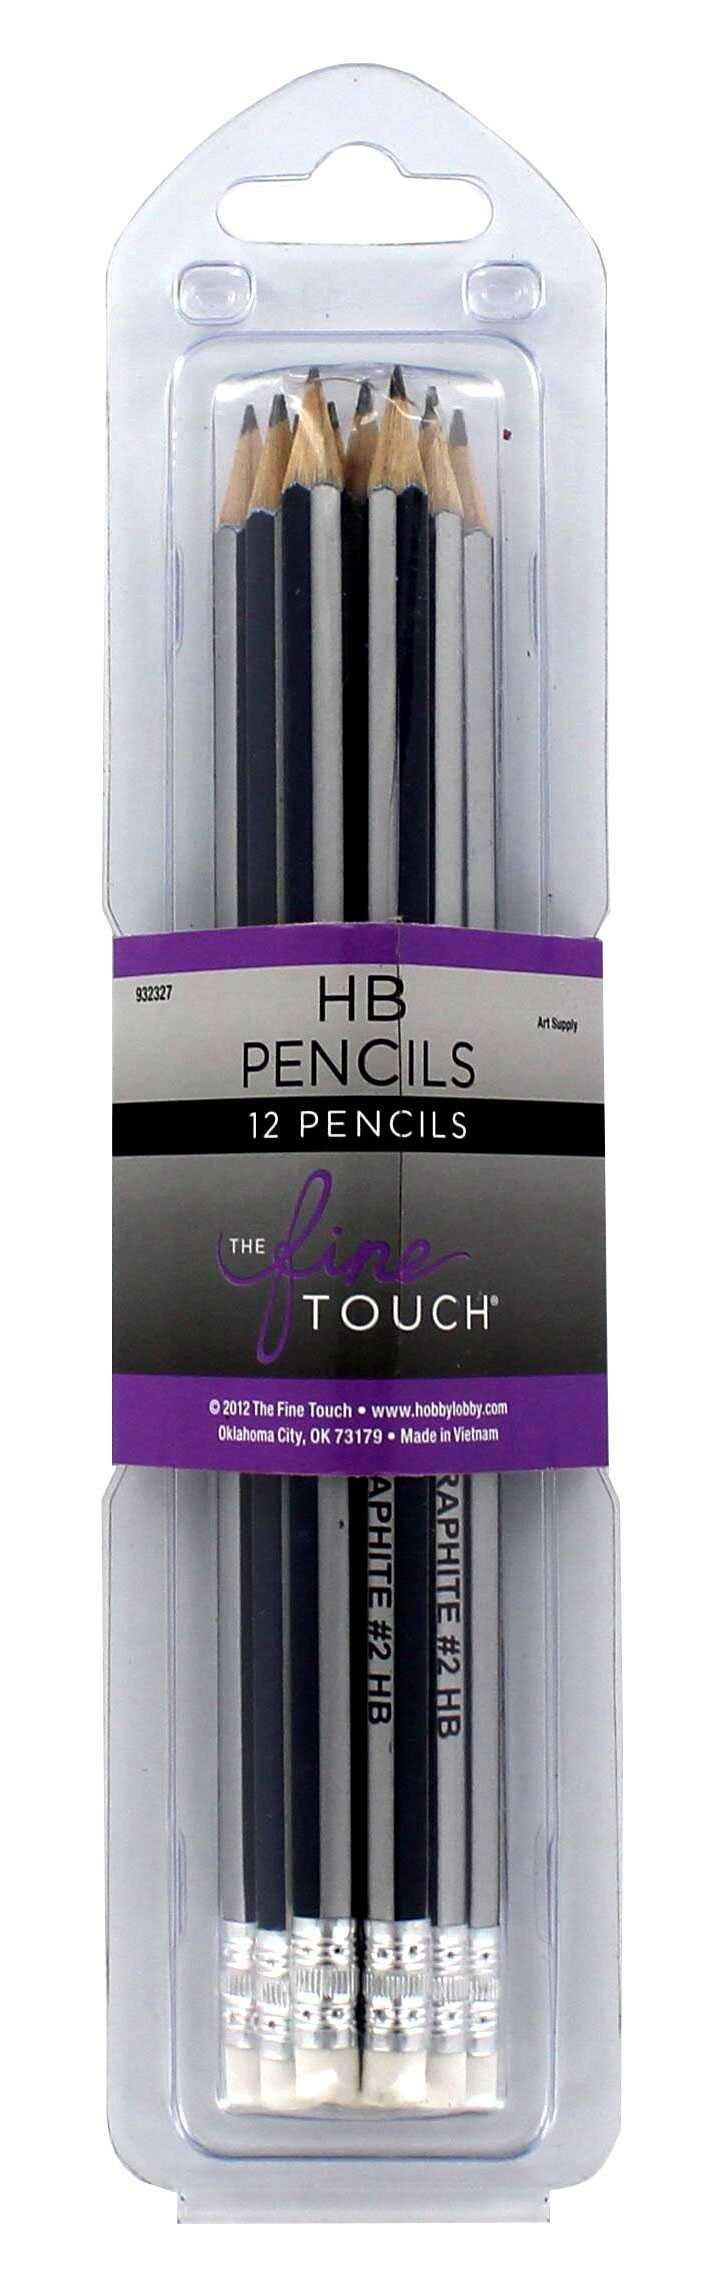 HB The Fine Touch Graphite Pencils - 12 Piece Set